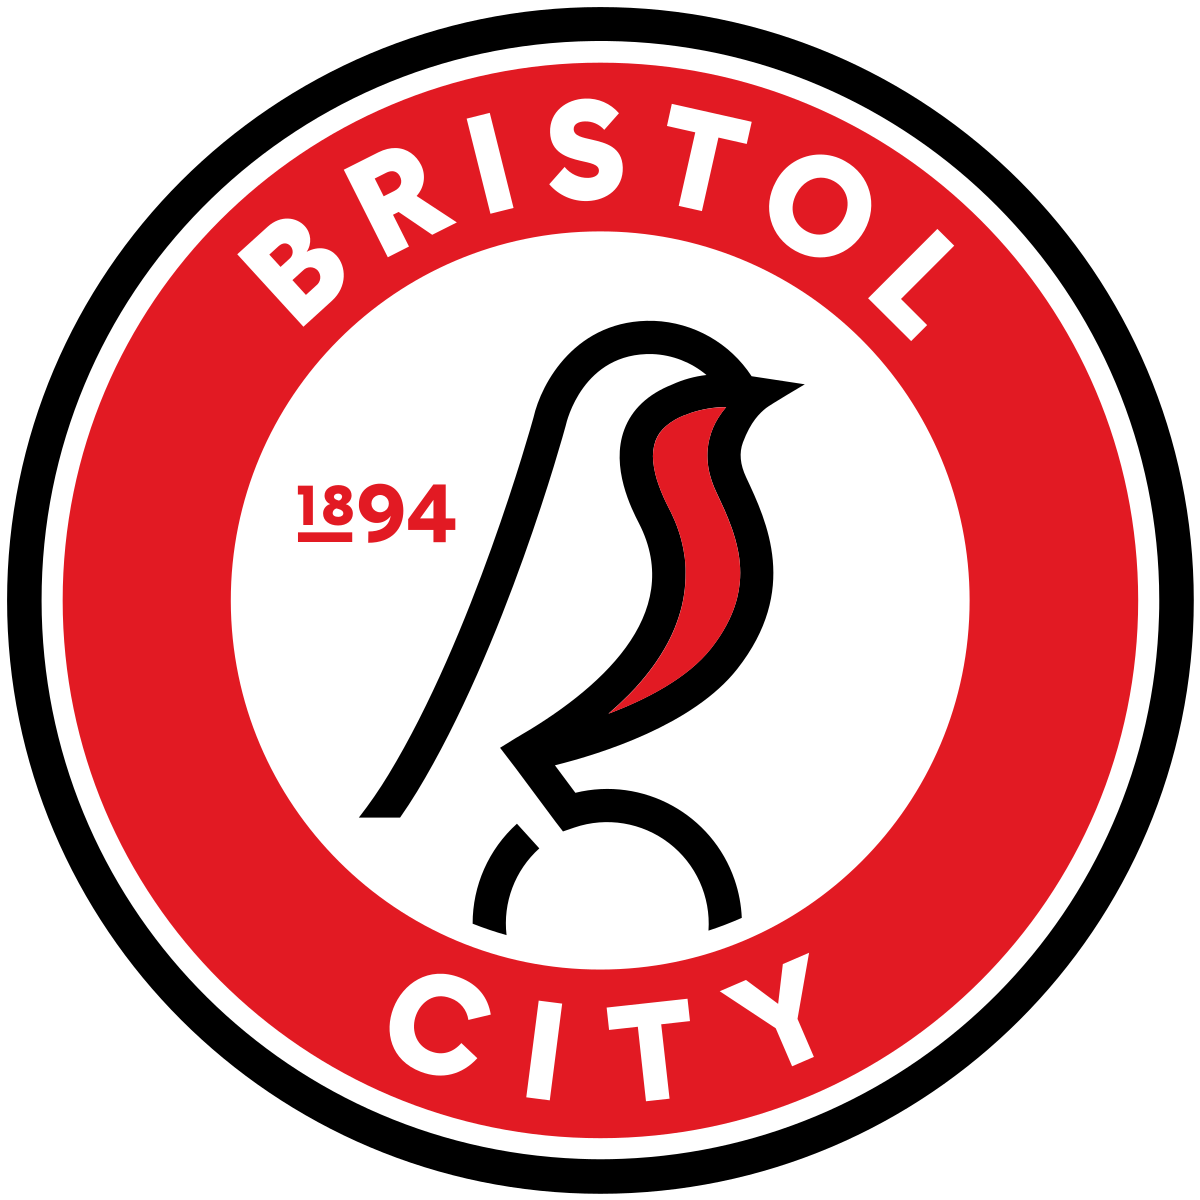 Bristol City v Cardiff City